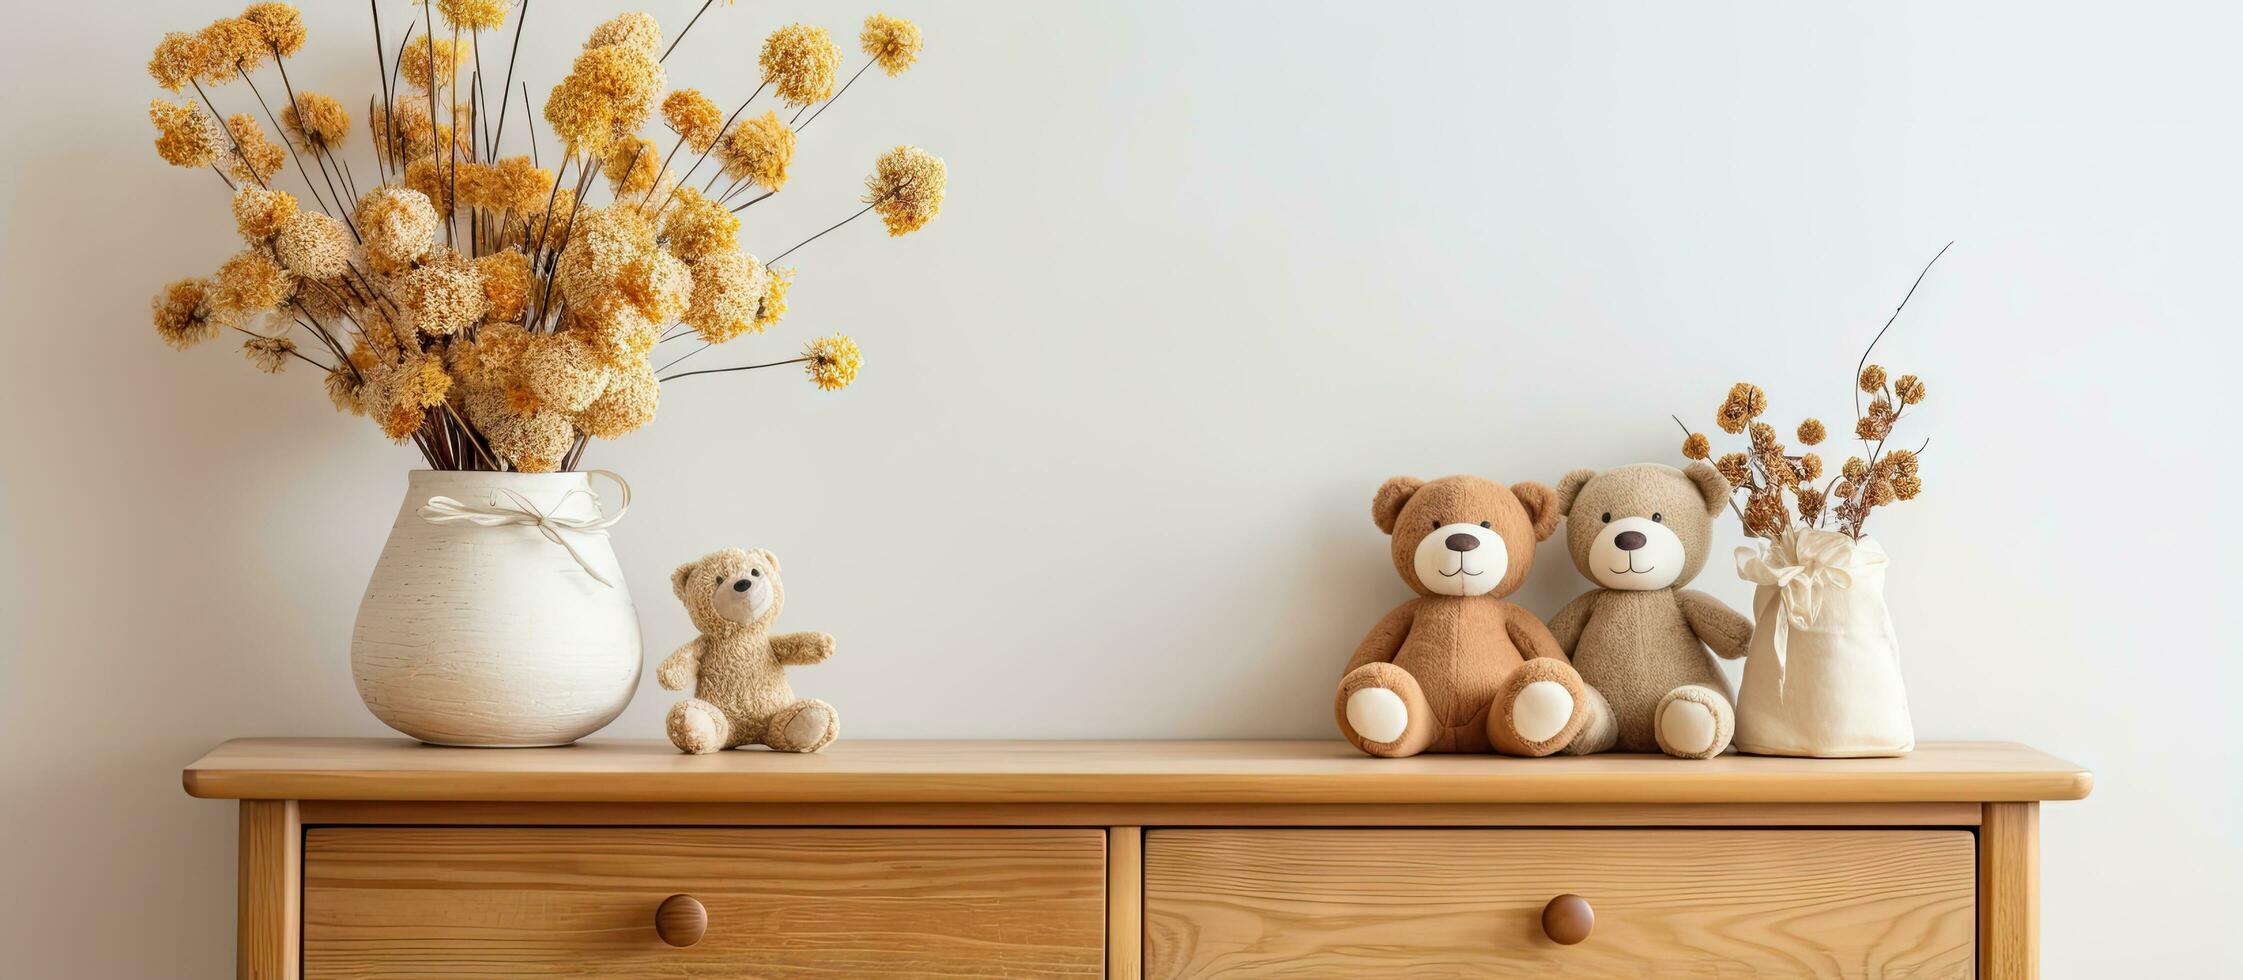 kinderen s kamer decor met houten speelgoed en droog bloemen Aan borst van laden foto